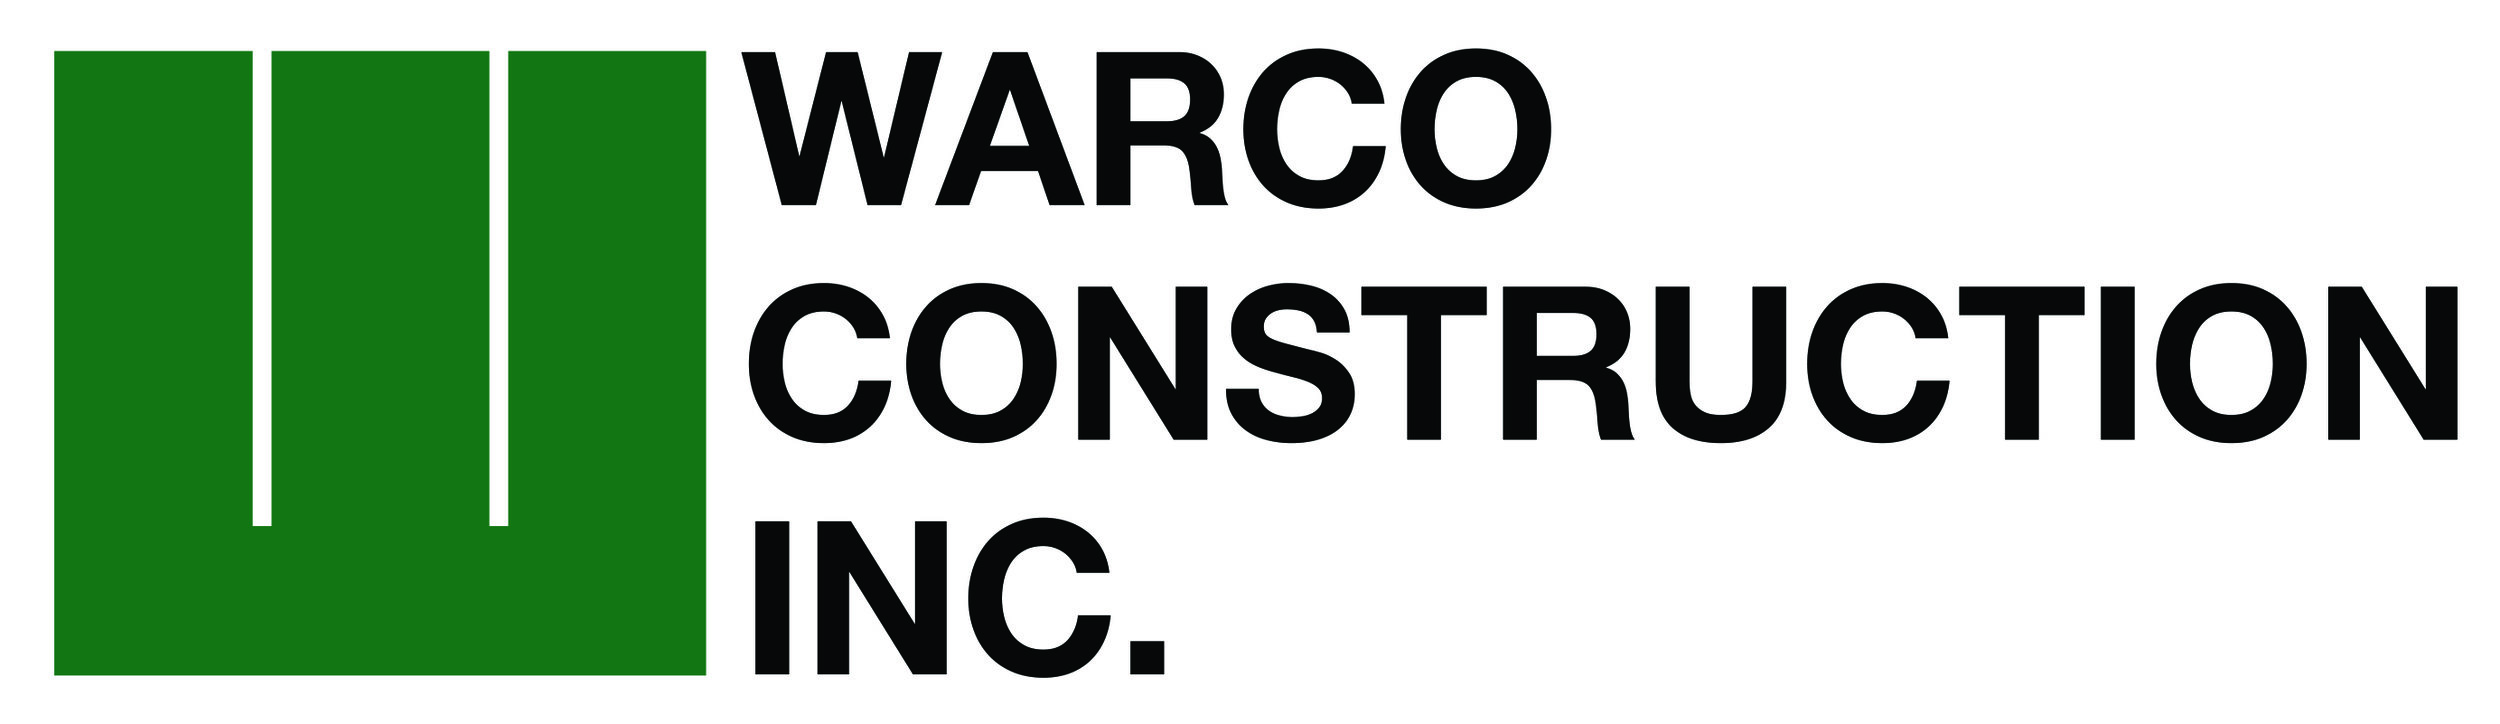 Warco-Logo-Large.jpg